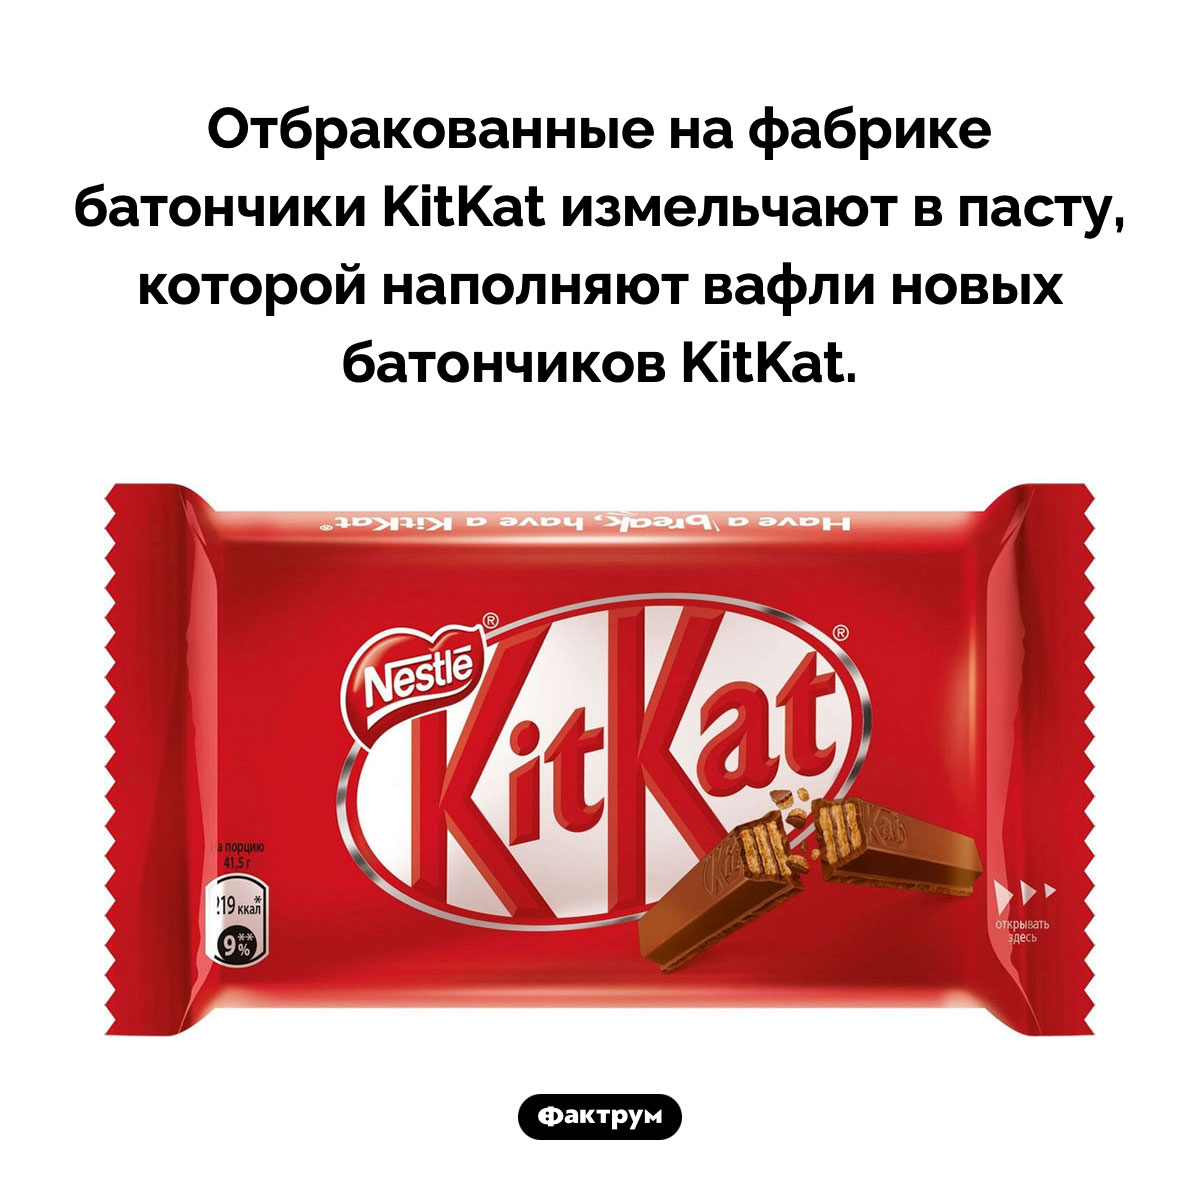 Чем наполнены вафли в батончиках KitKat. Отбракованные на фабрике батончики KitKat измельчают в пасту, которой наполняют вафли новых батончиков KitKat.